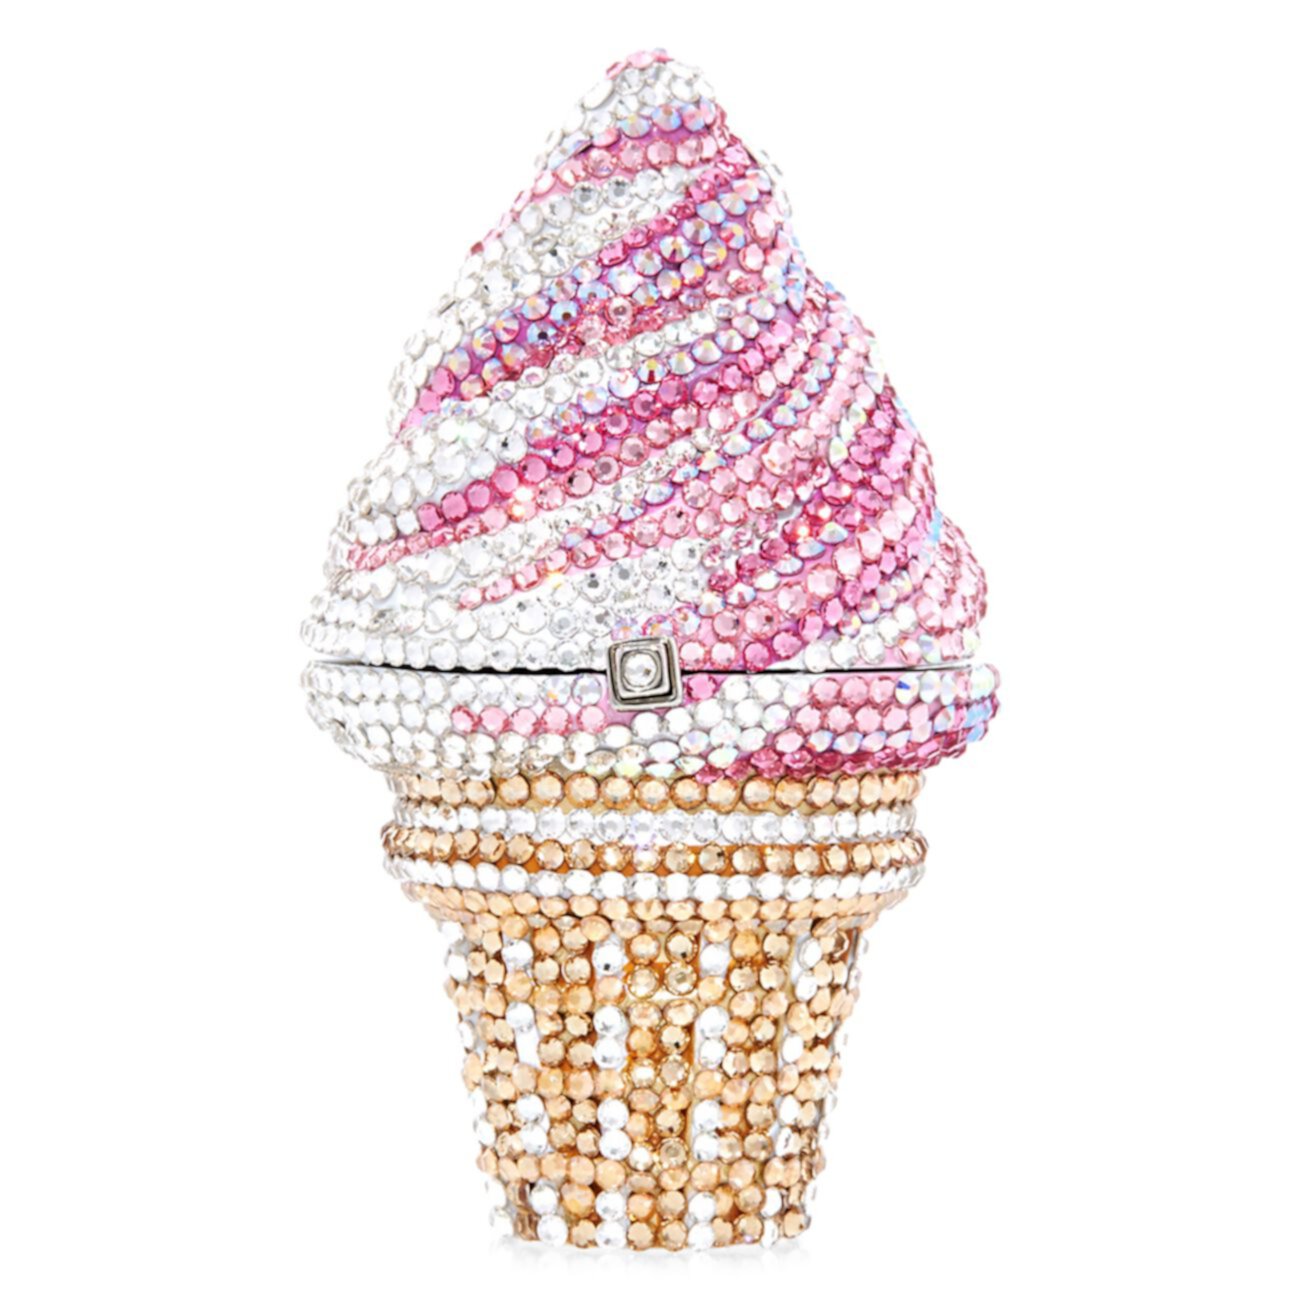 Рожок для мороженого с клубникой и кристаллами для пилюль Judith Leiber